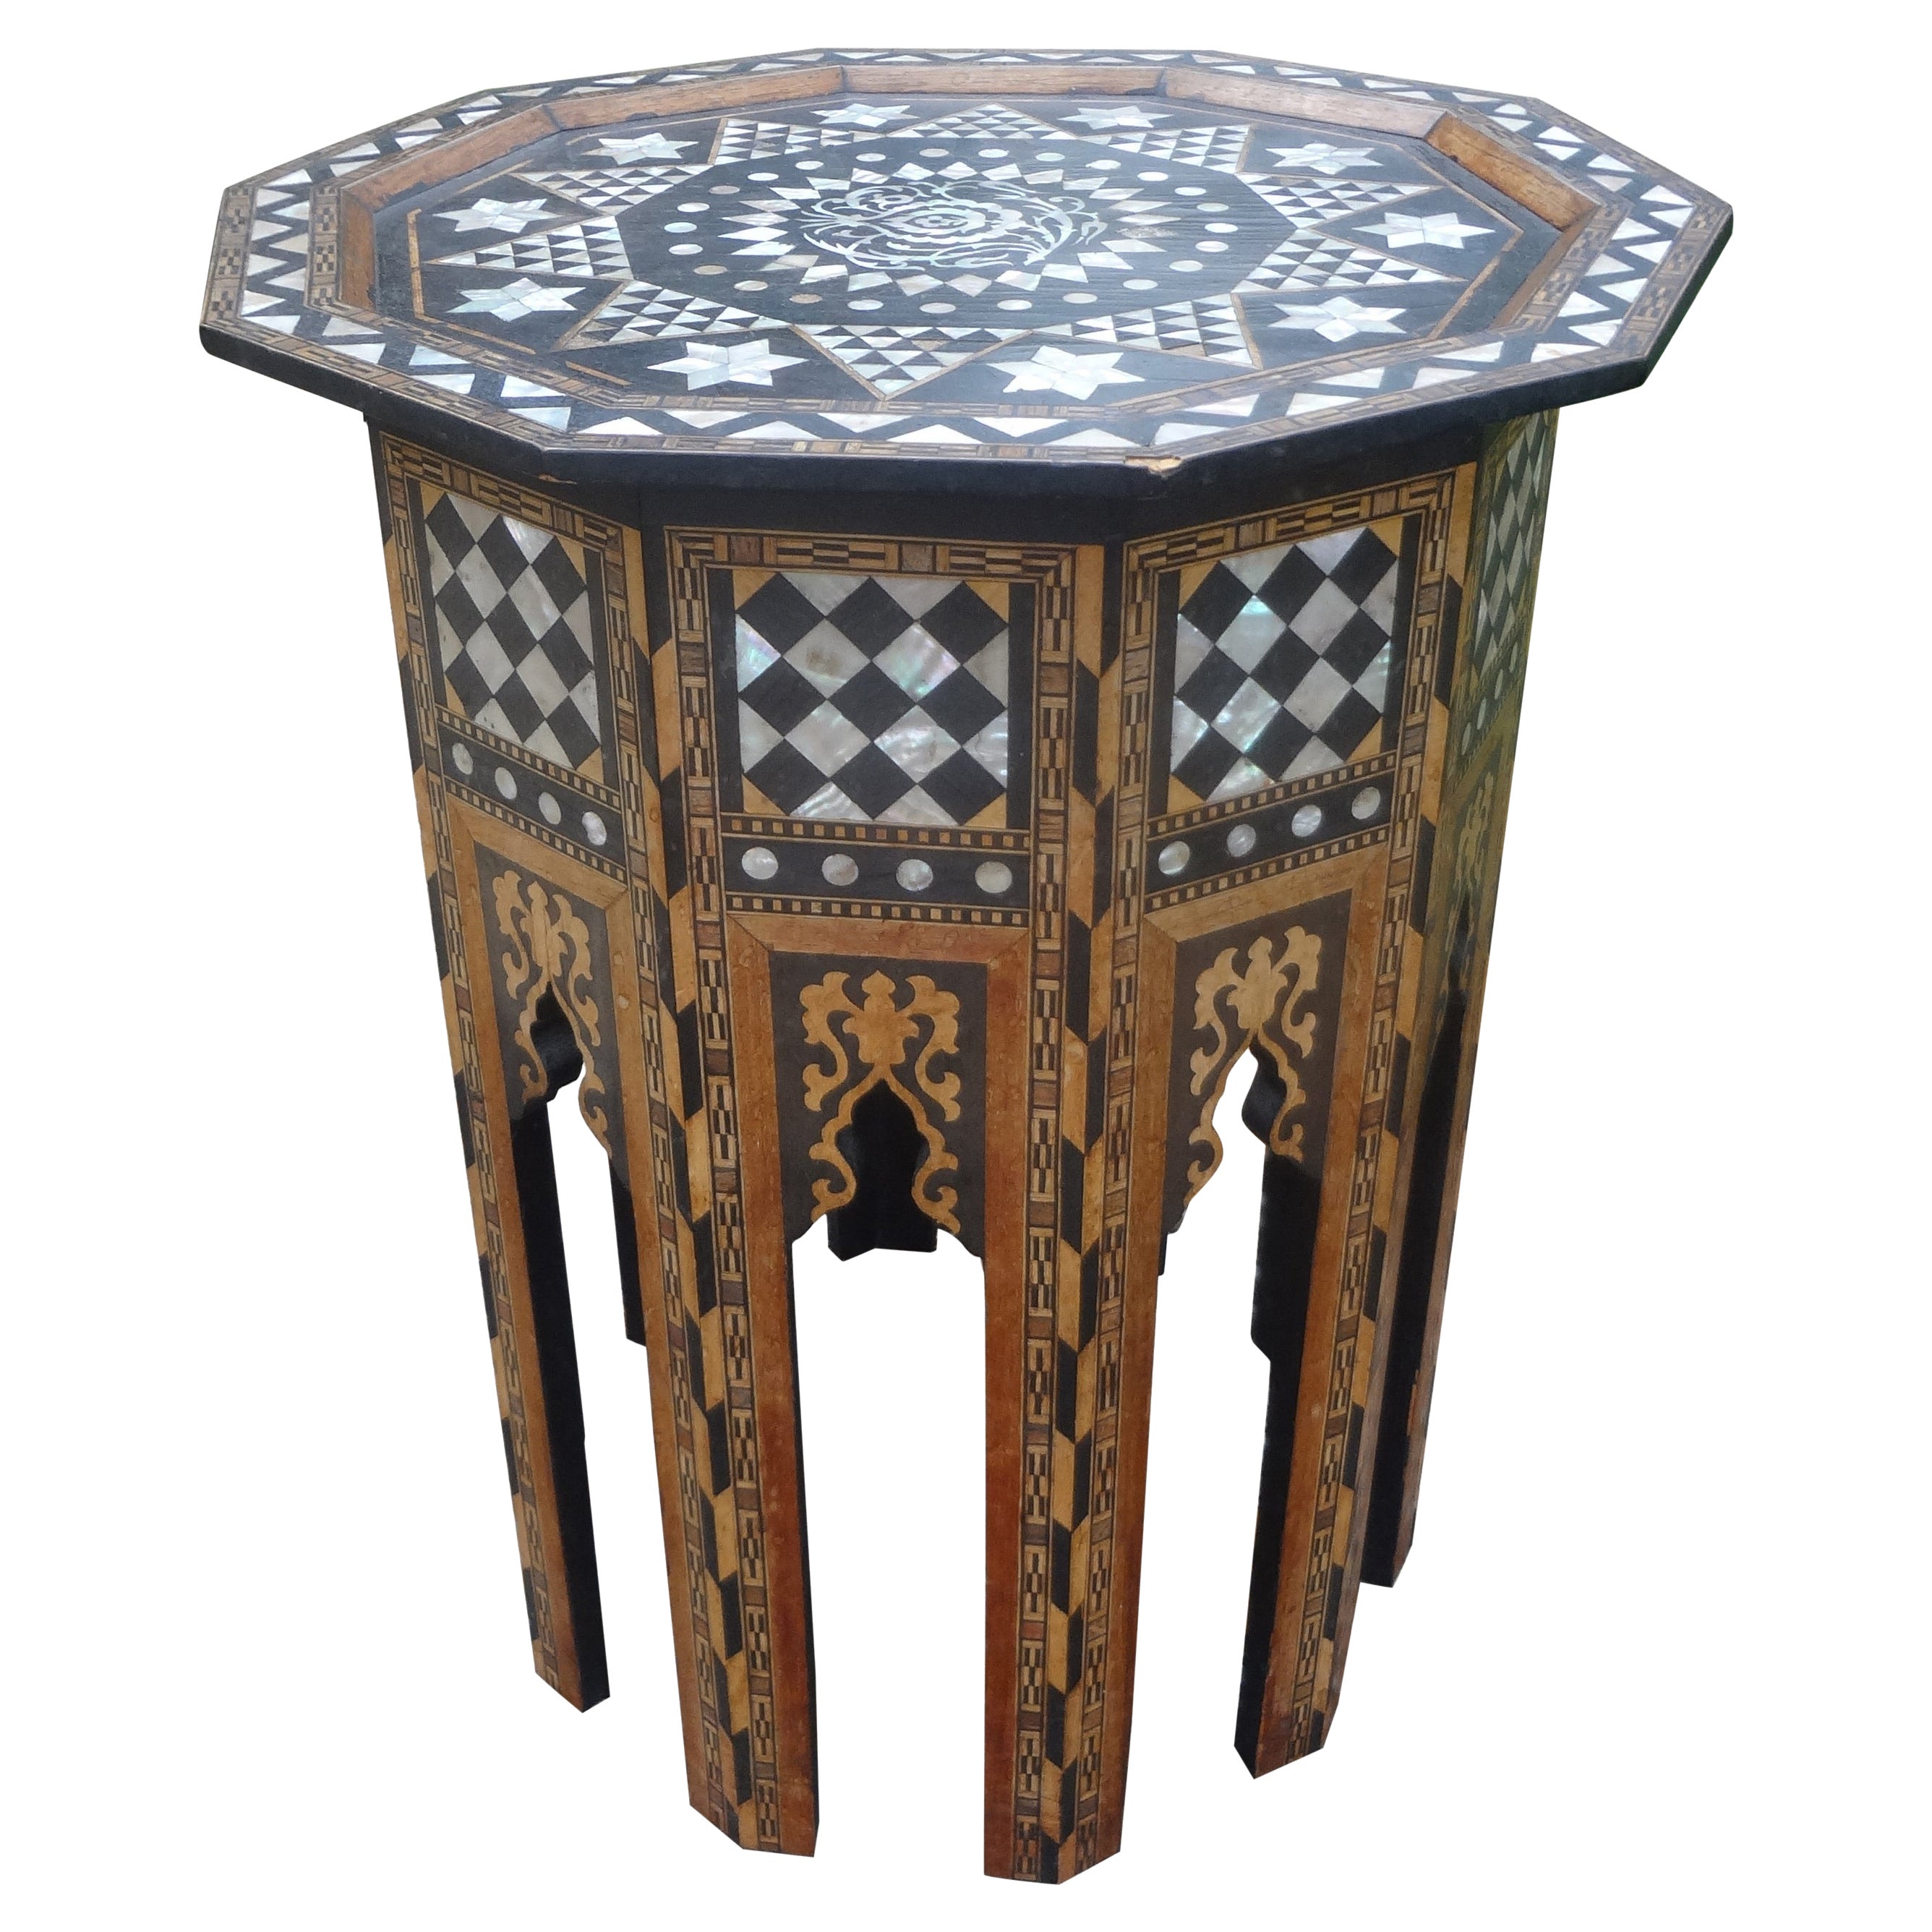 Antiker Tisch mit Perlmutt-Intarsien im arabischen Stil aus dem Nahen Osten